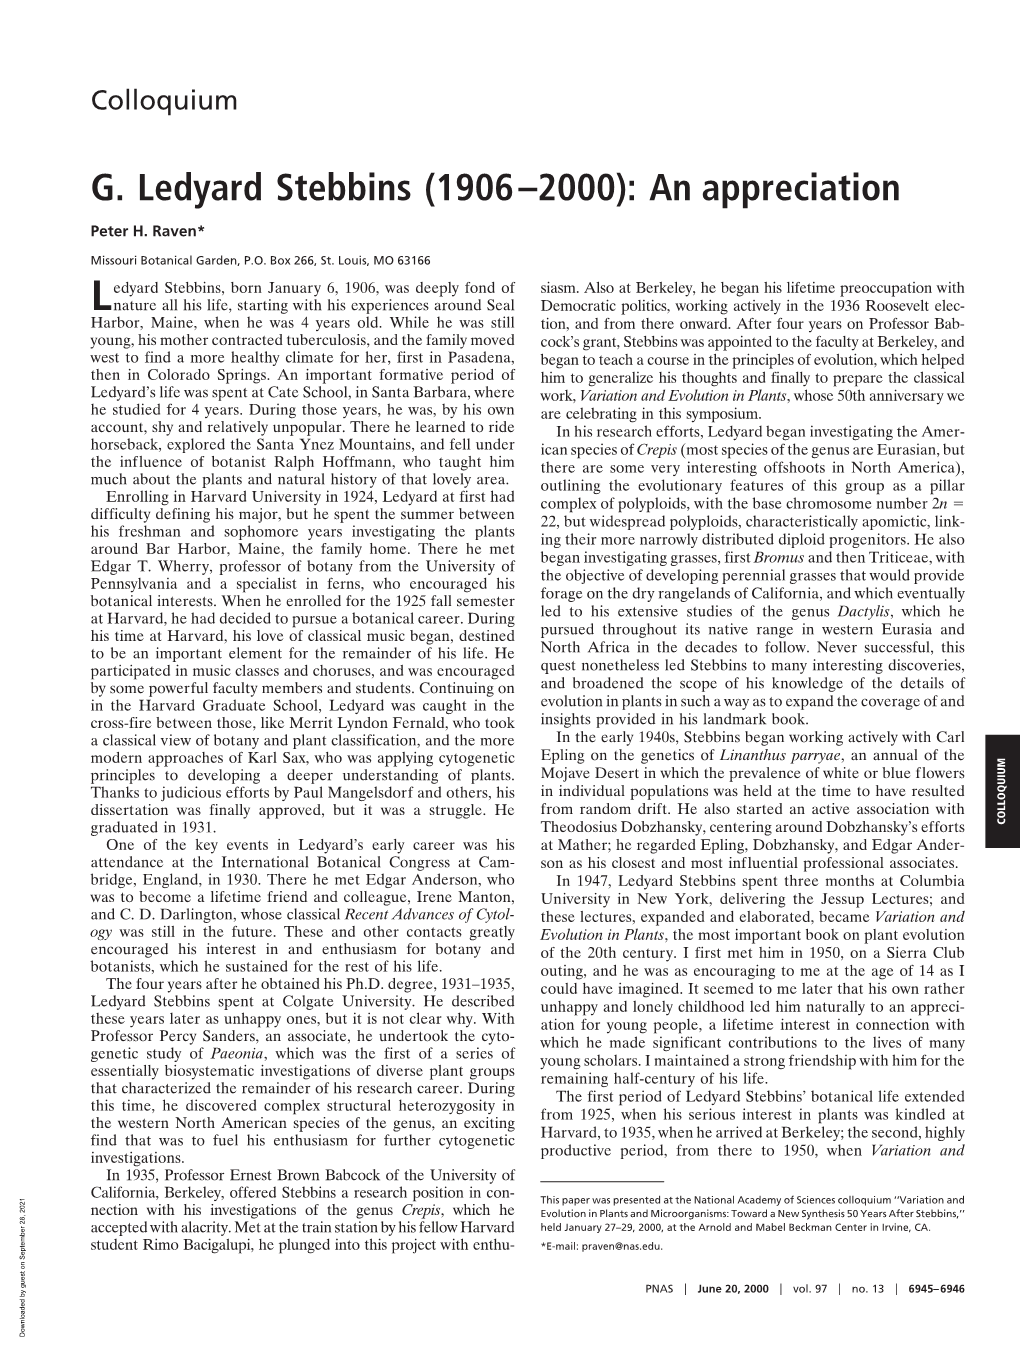 G. Ledyard Stebbins (1906–2000): an Appreciation